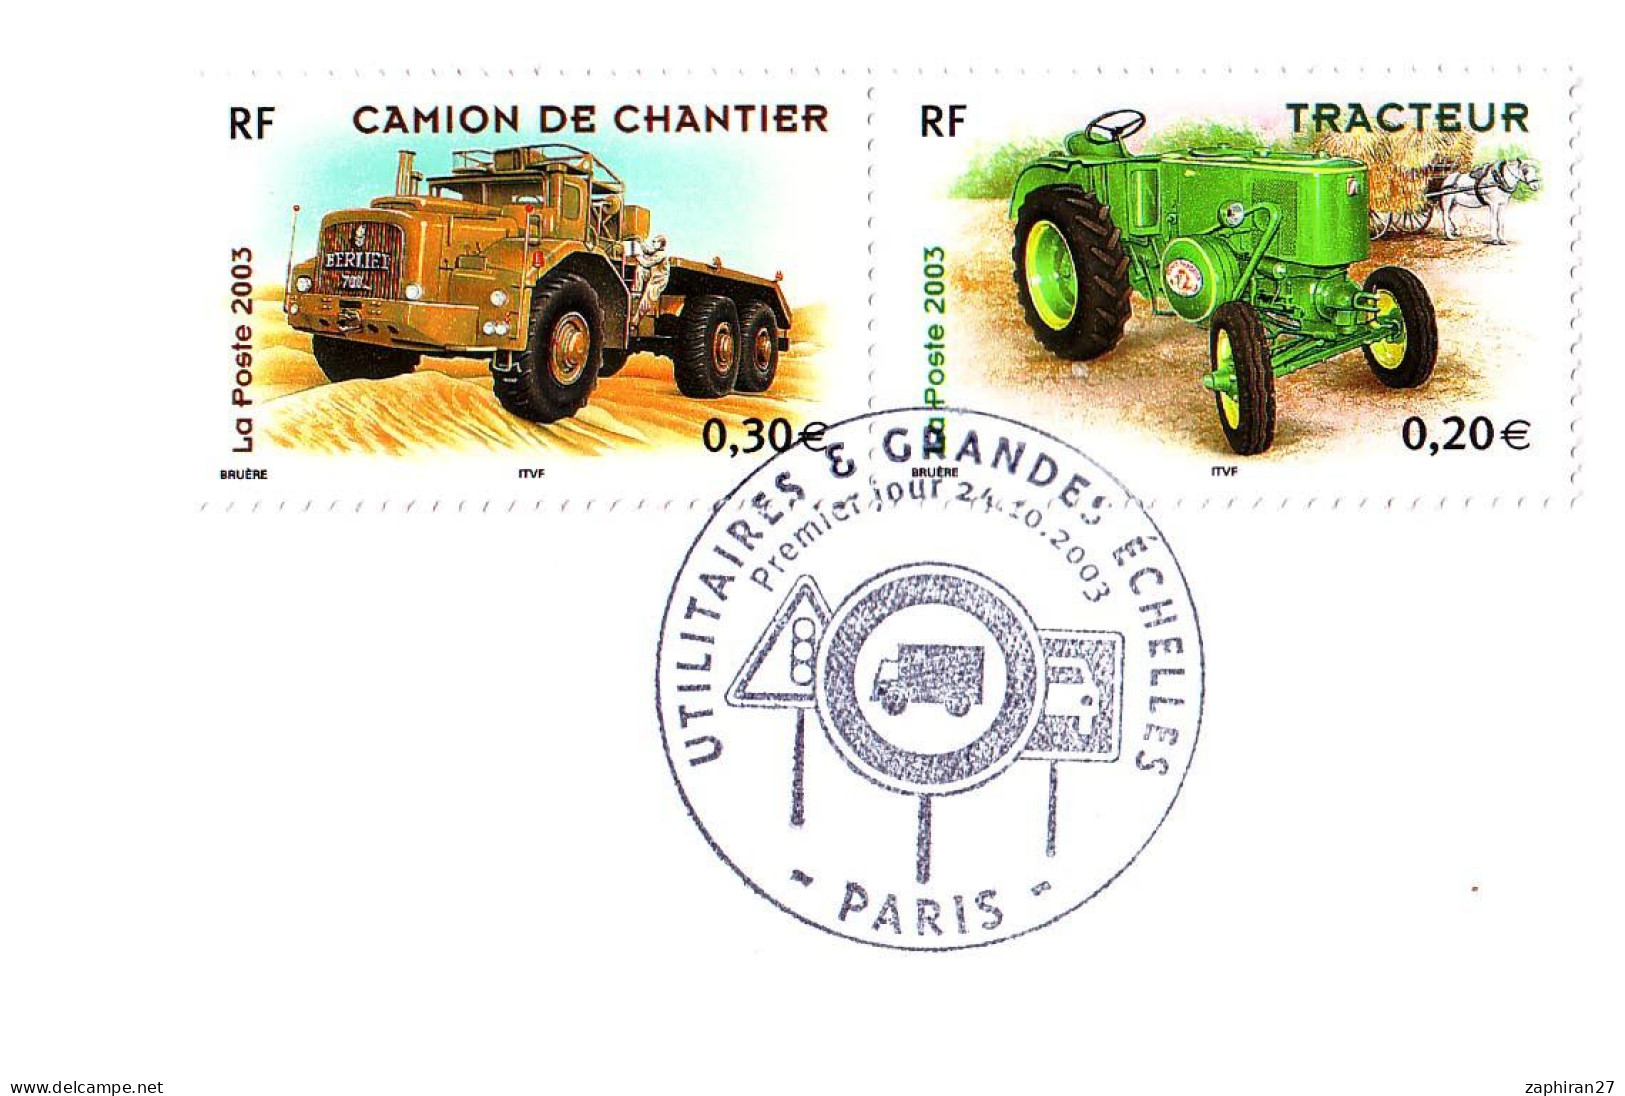 CAT TRANSORT : PARIS UTILITAIRES ET GRANDES ECHELLES / CAMION DE CHANTIER ET TRACTEUR (24-10-2003) #517# - Camions